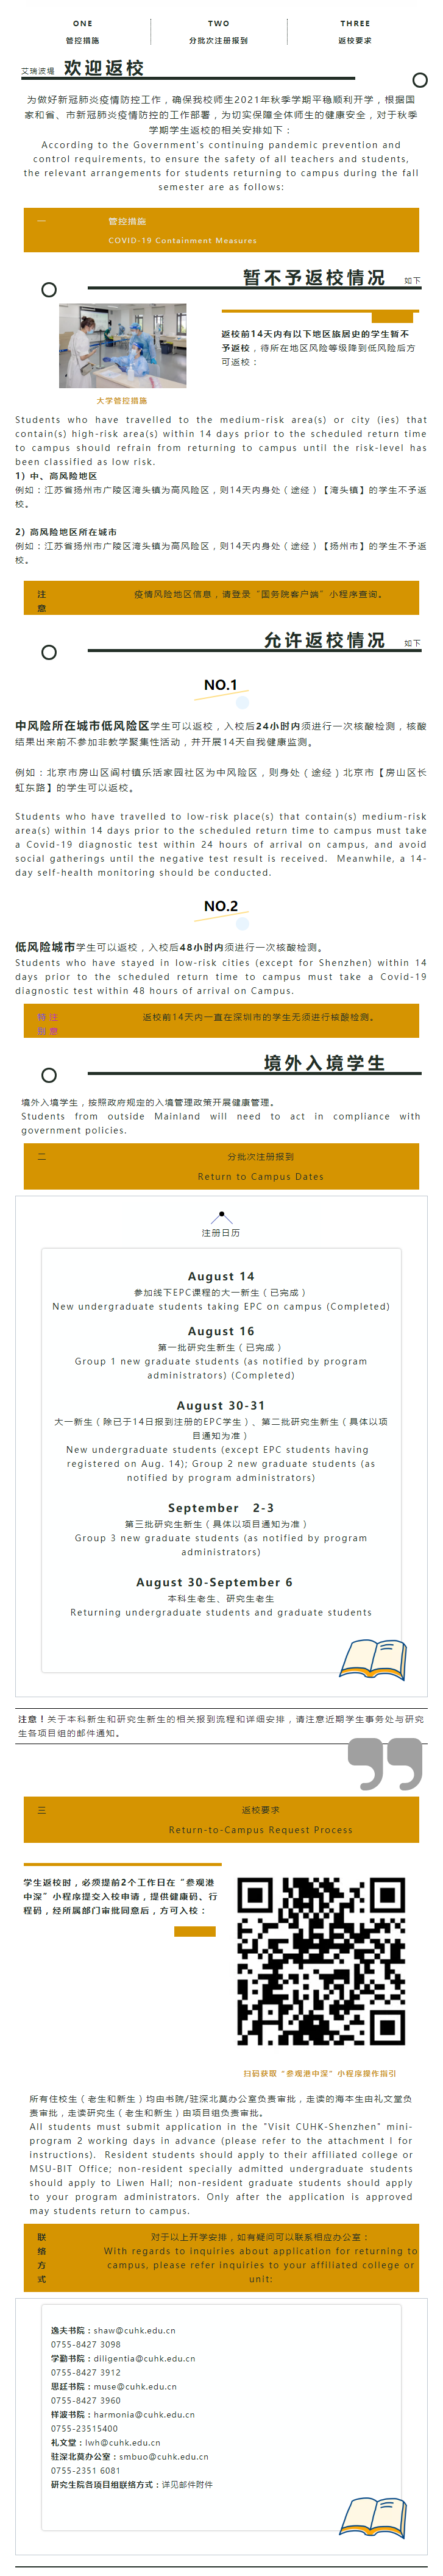 香港中文大学（深圳）2021年秋季学期学生返校安排重要通知